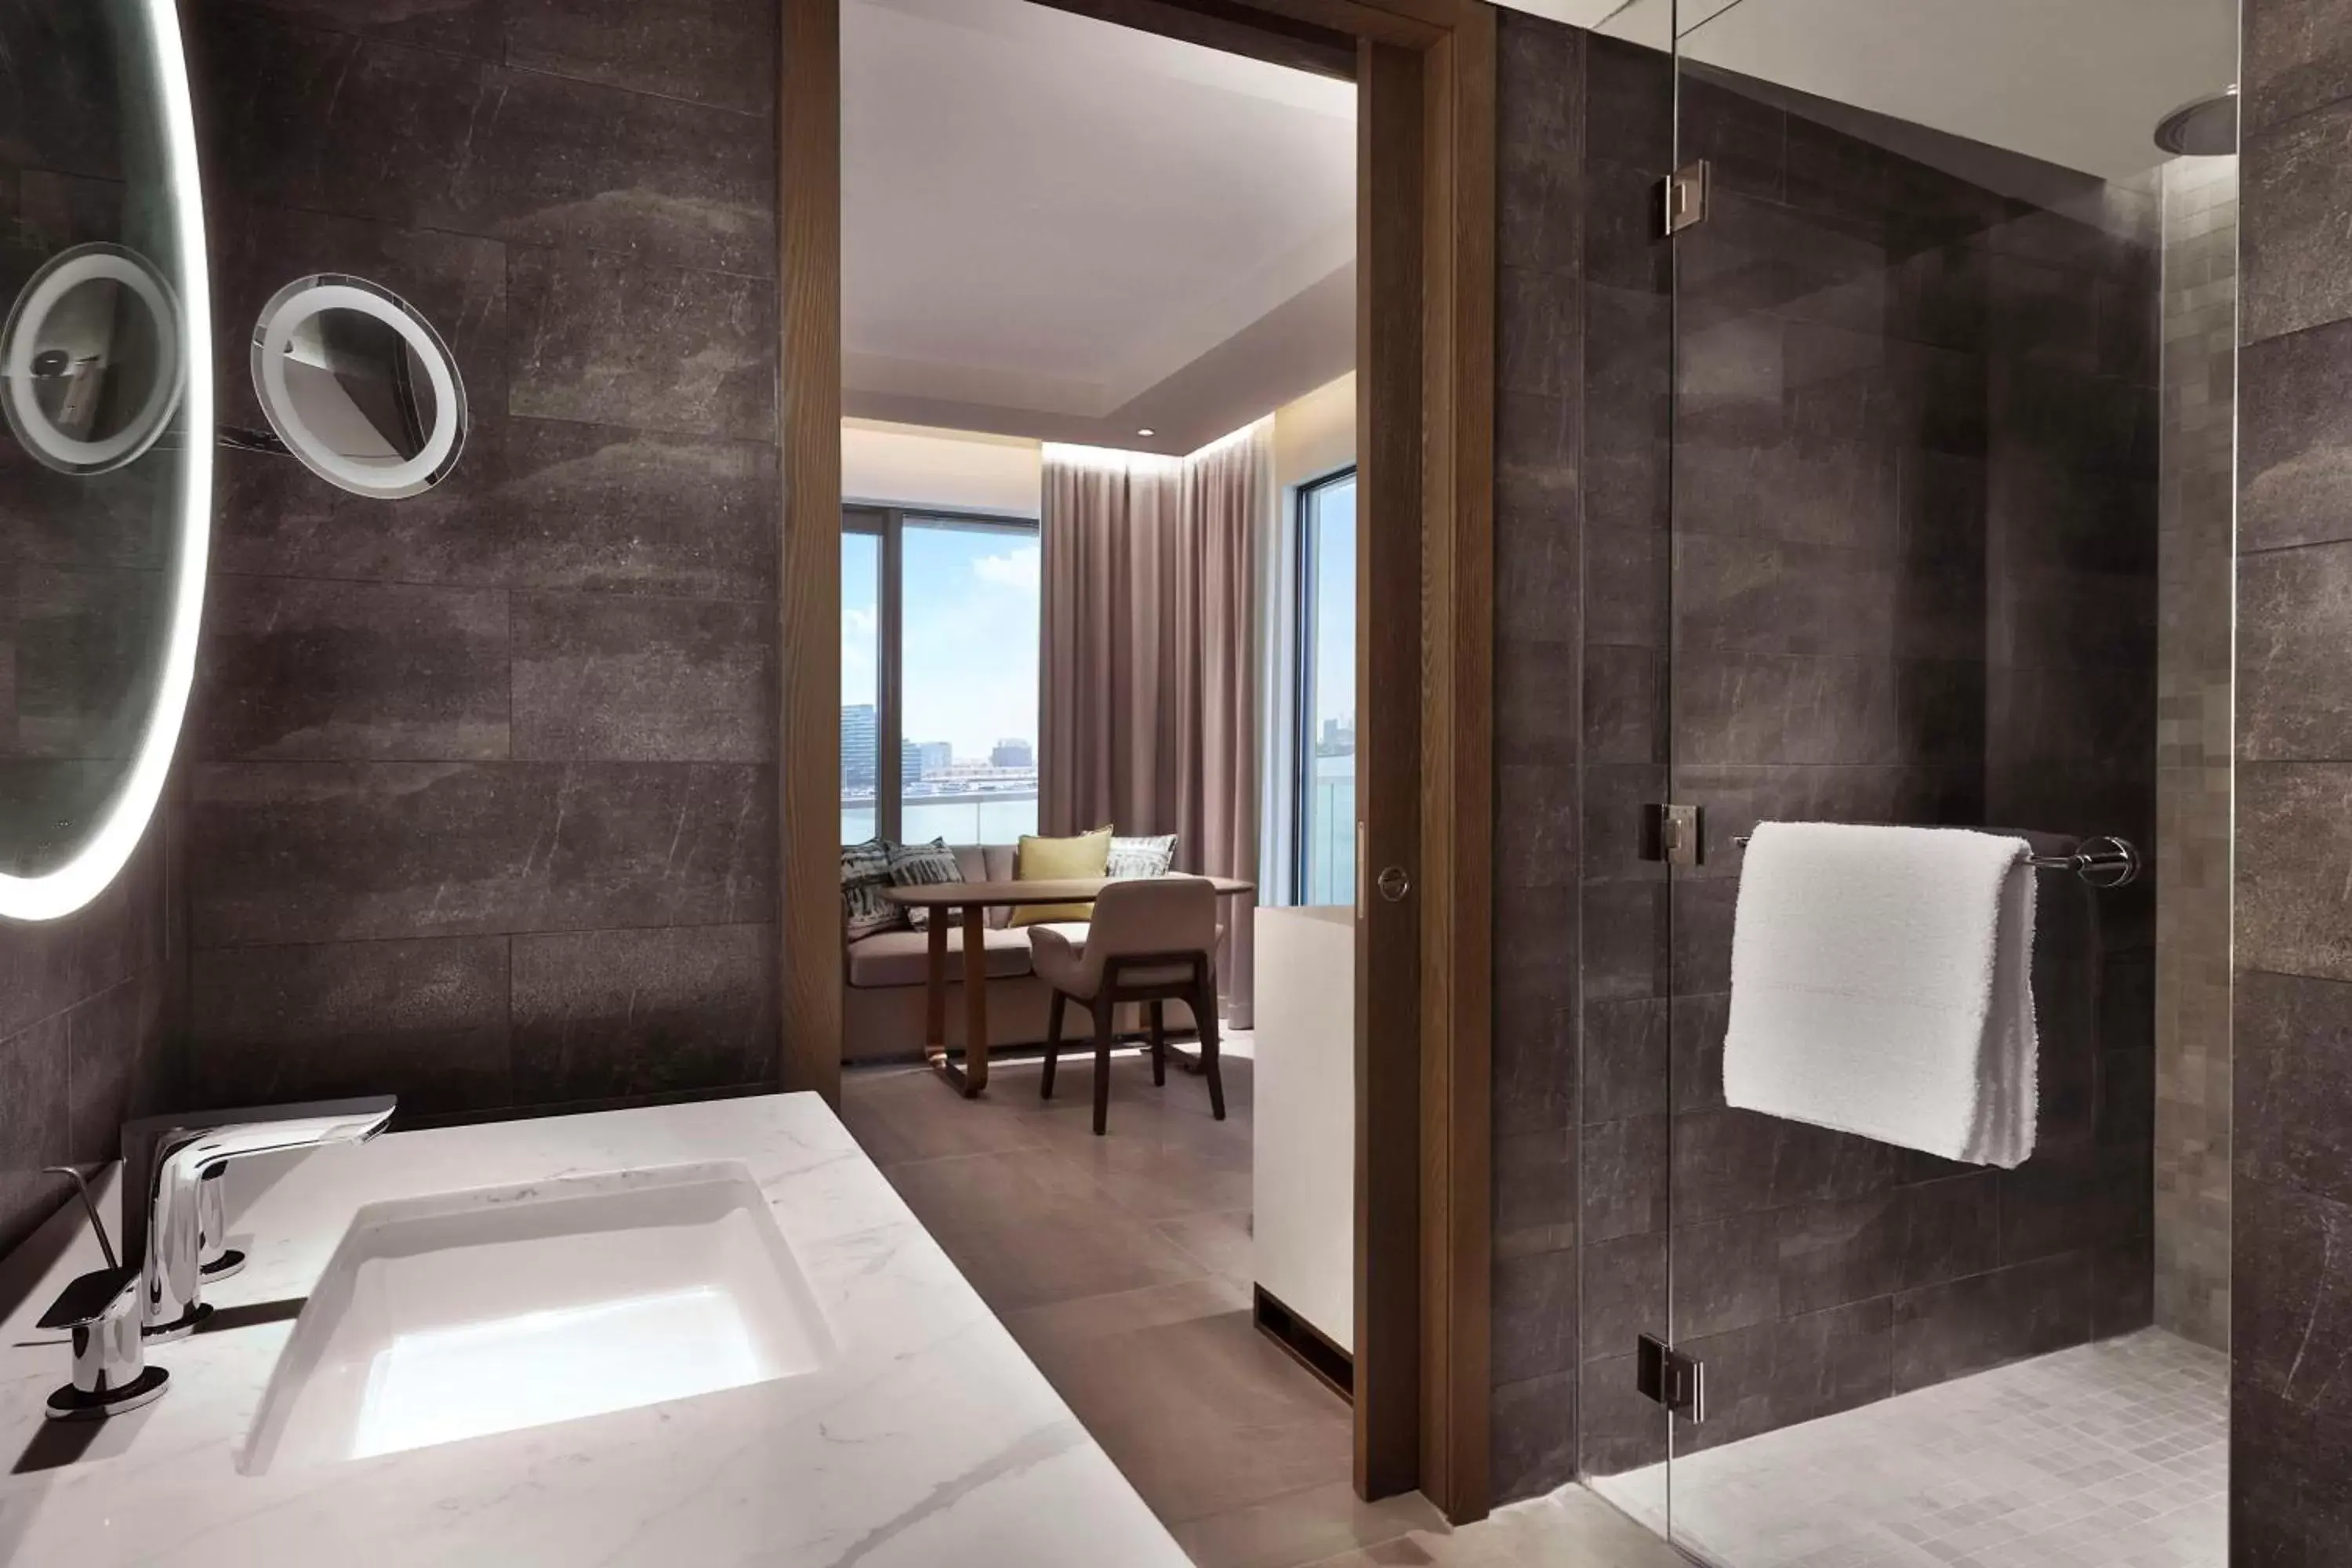 Toilet, Bathroom in Hilton Abu Dhabi Yas Island